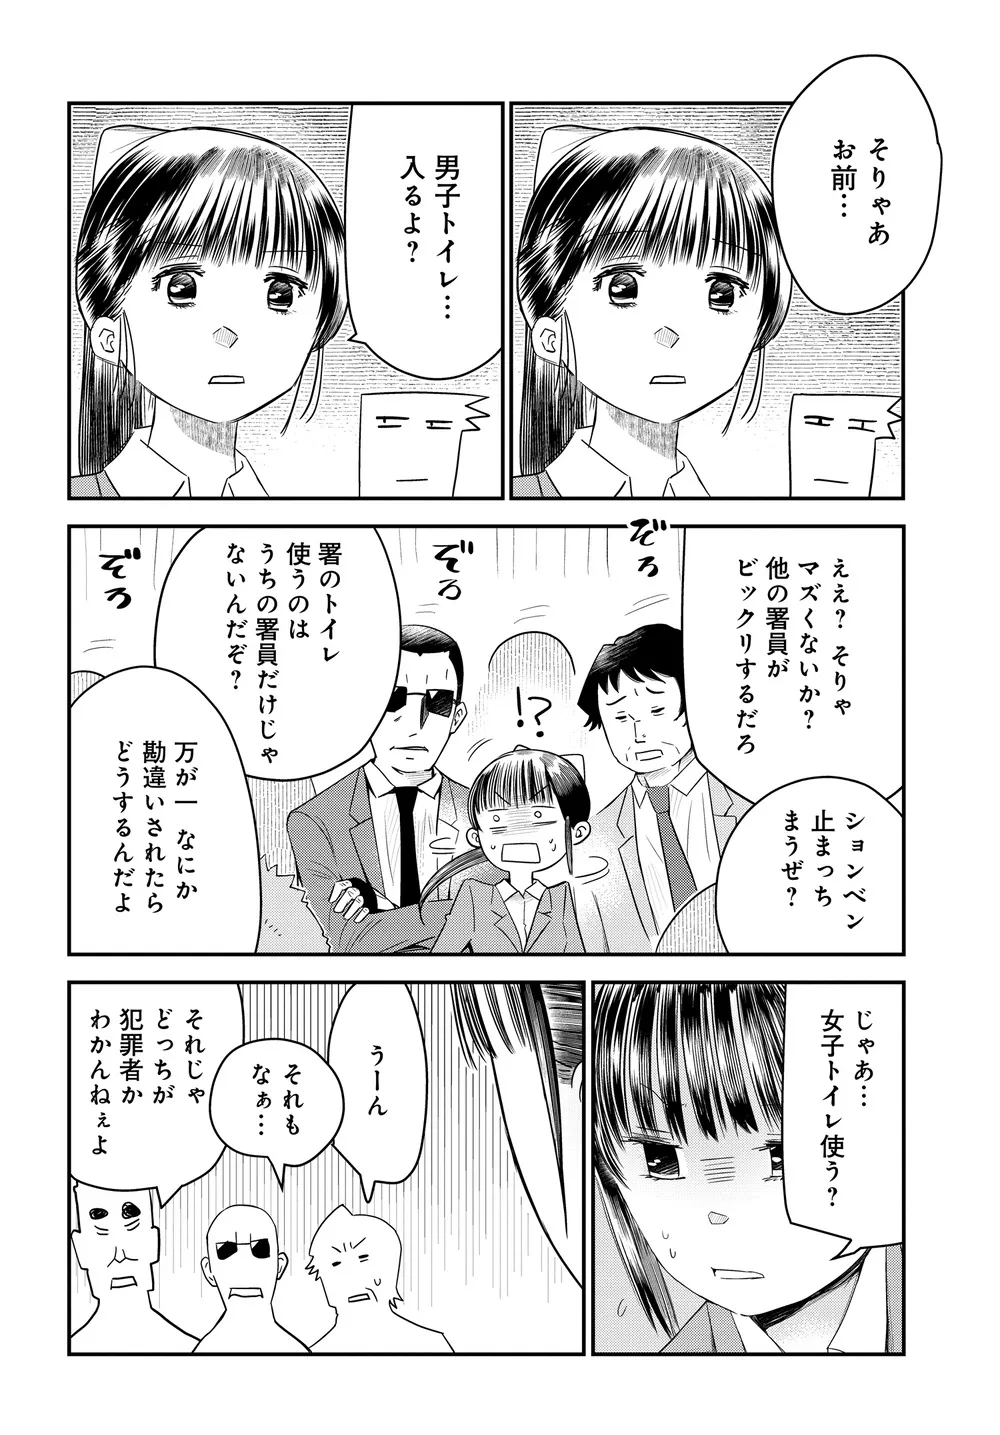 『美人すぎる女装刑事 藤堂さん』(27/39)